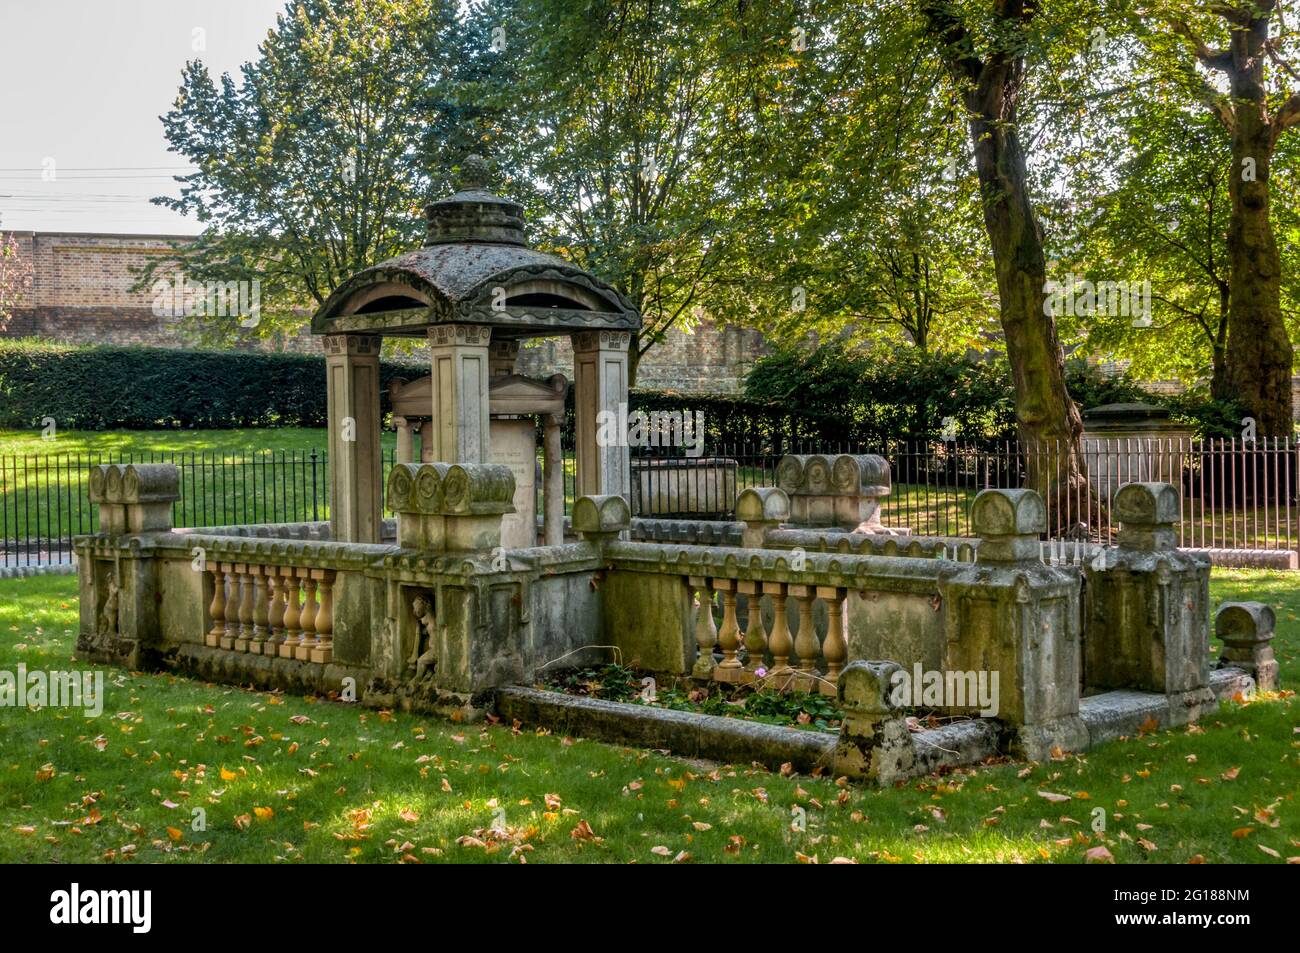 Tombe de Sir John Soane et famille dans les jardins de l'église de St Pancras. La structure centrale a influencé la conception du boîtier téléphonique par George Gilbert Scott. Banque D'Images